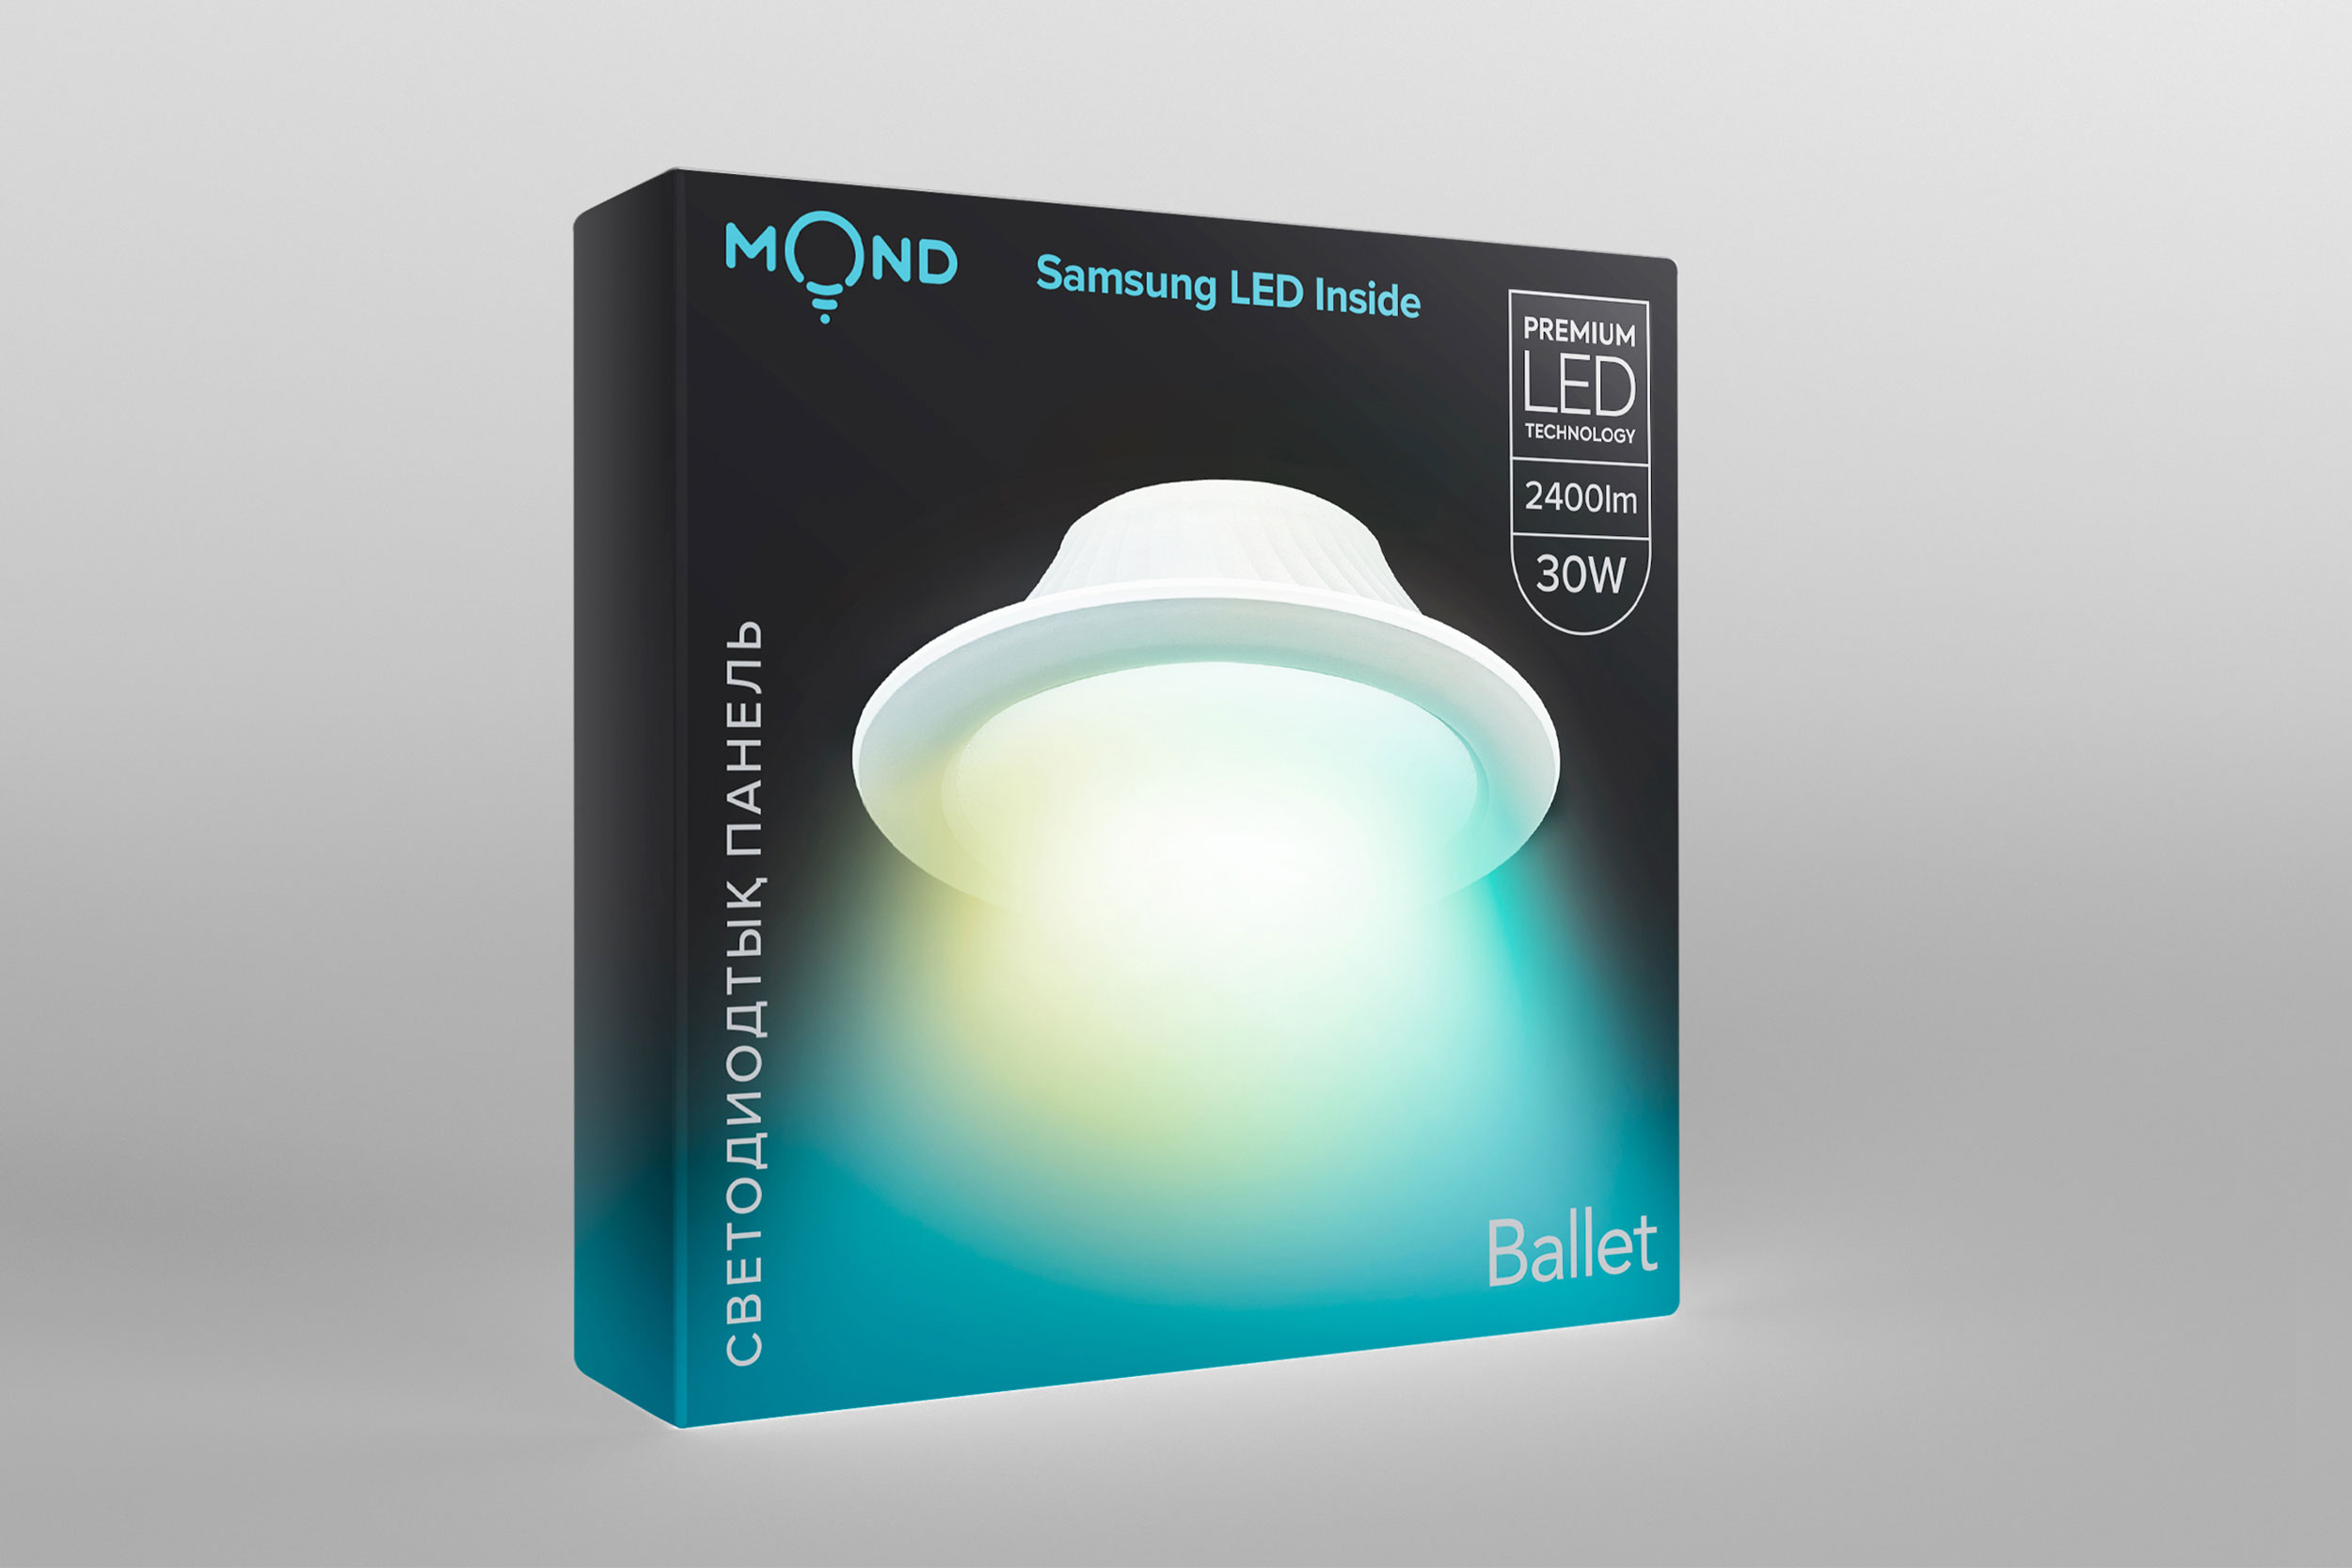 Дизайн упаковки светодиодных панелей “Mond”